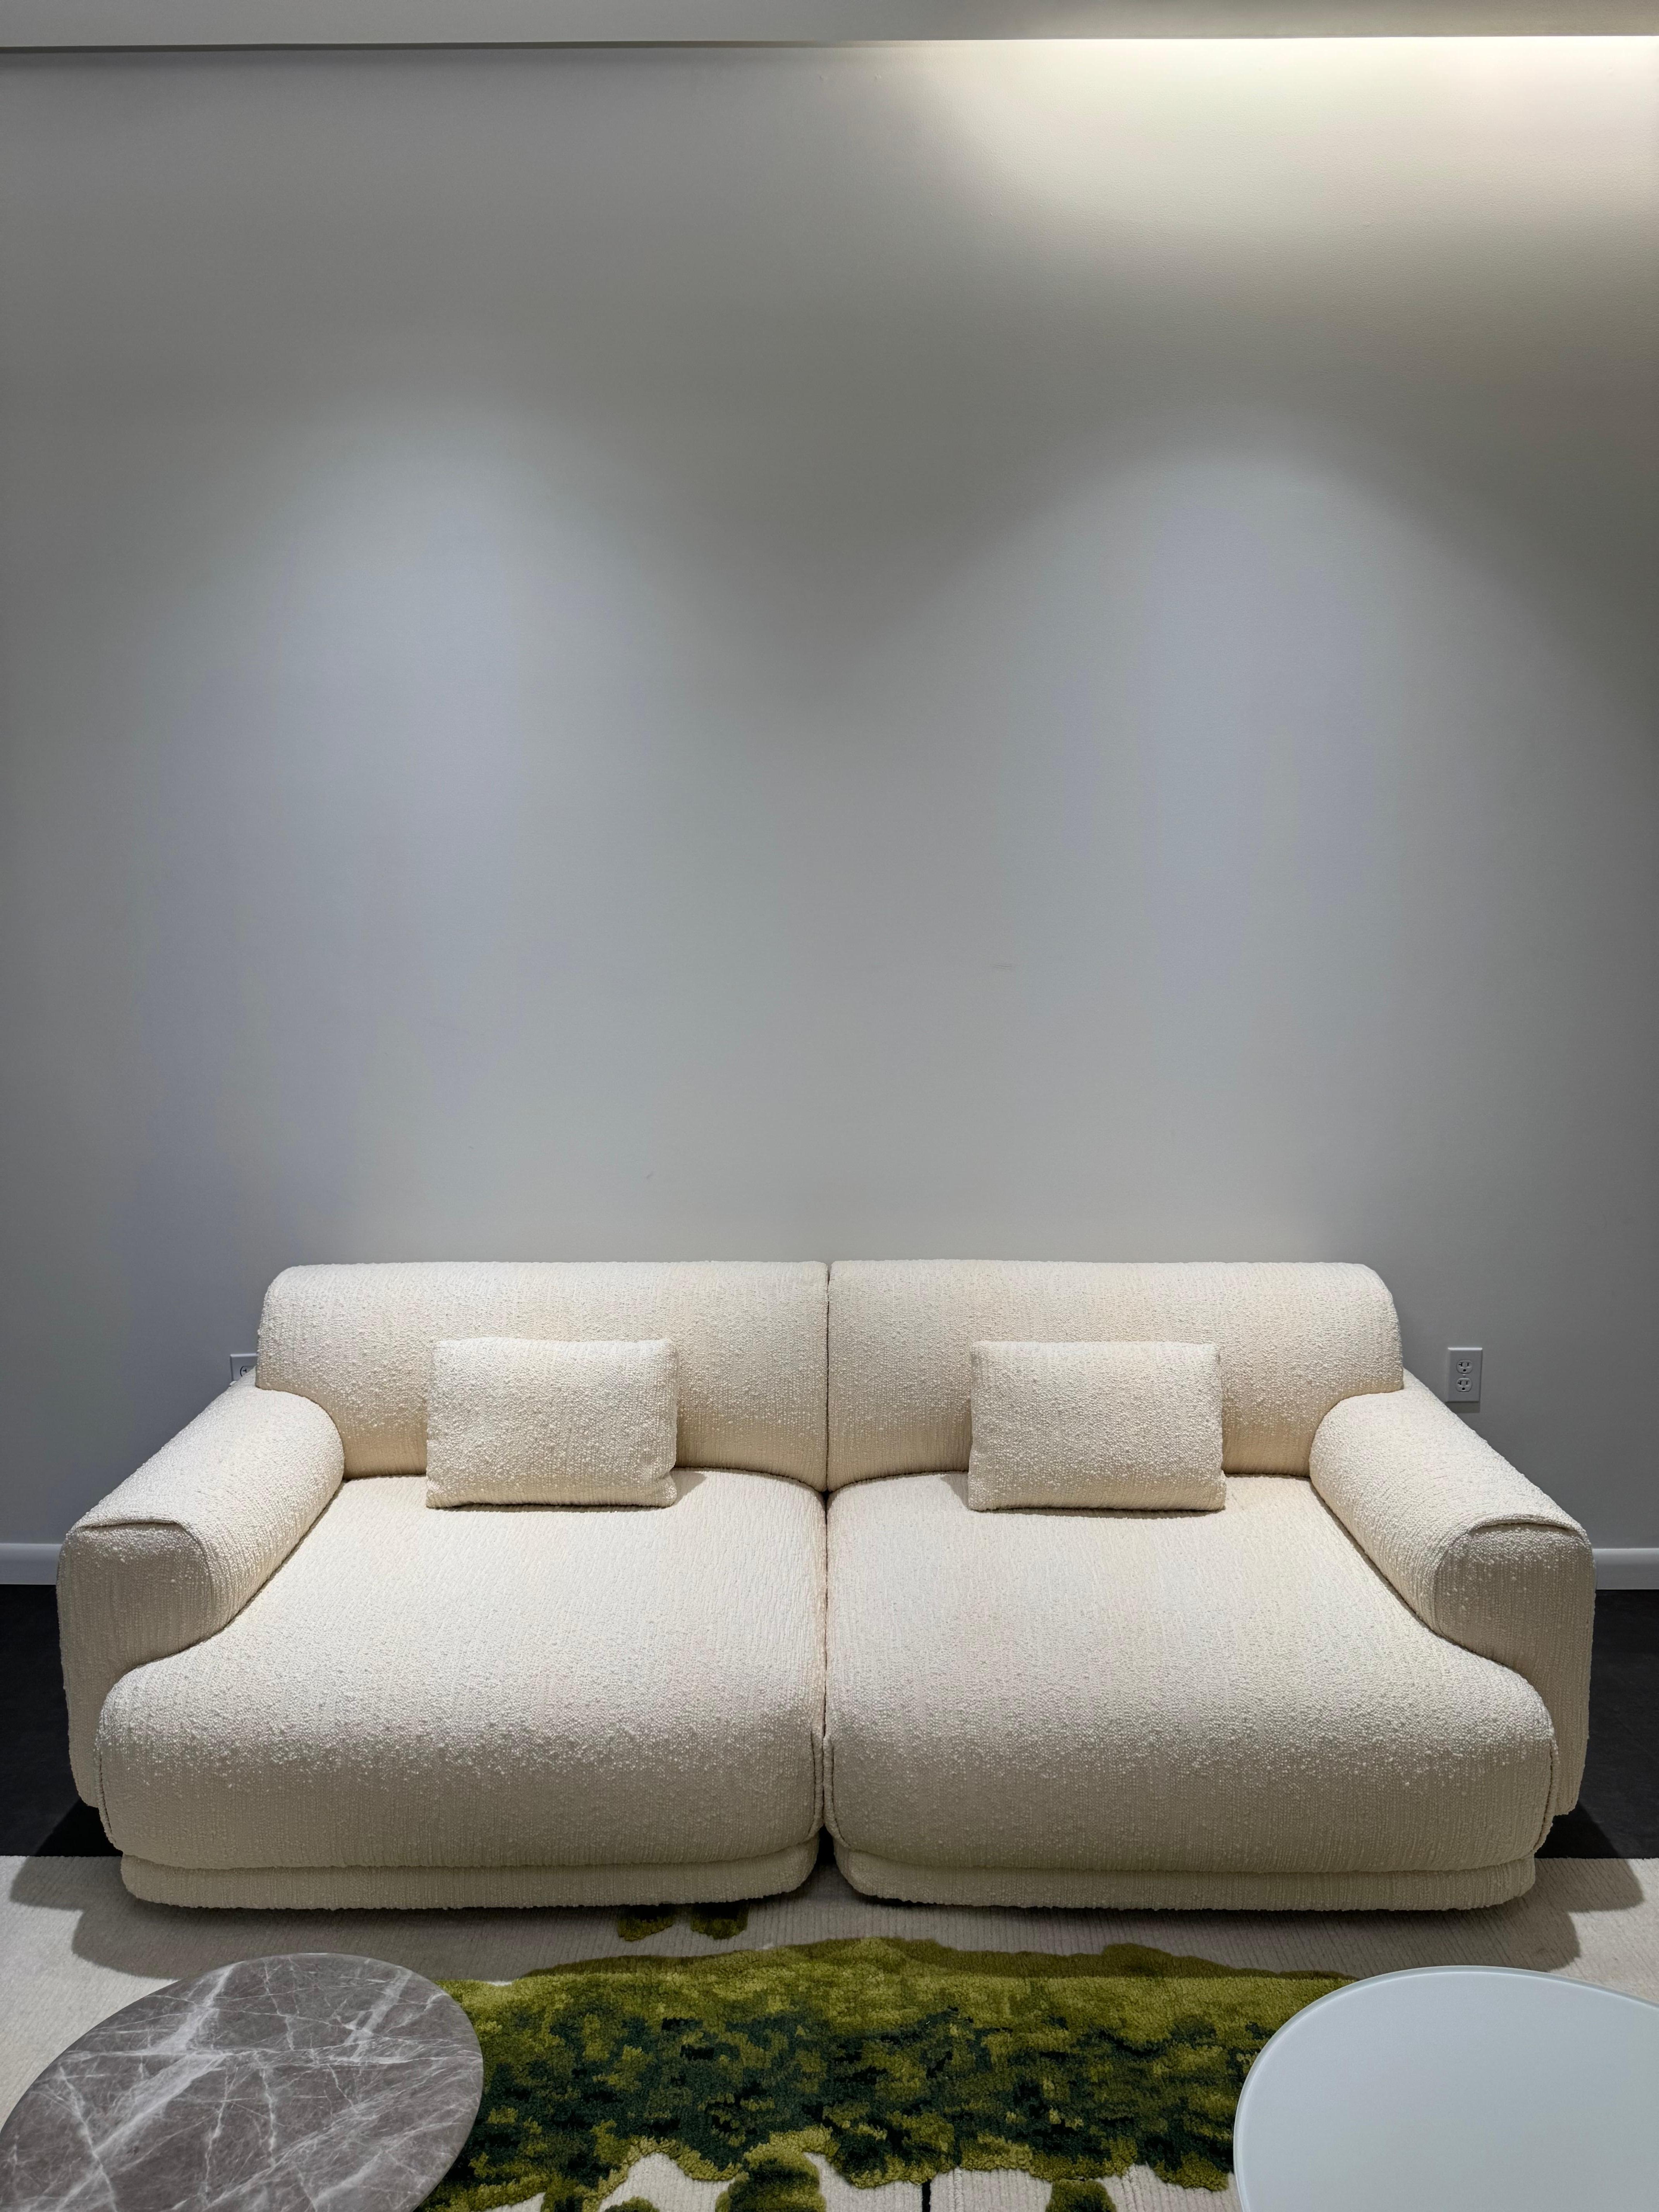 Italian La Manufacture-Paris Moos Sofa by Sebastian Herkner in STOCK For Sale